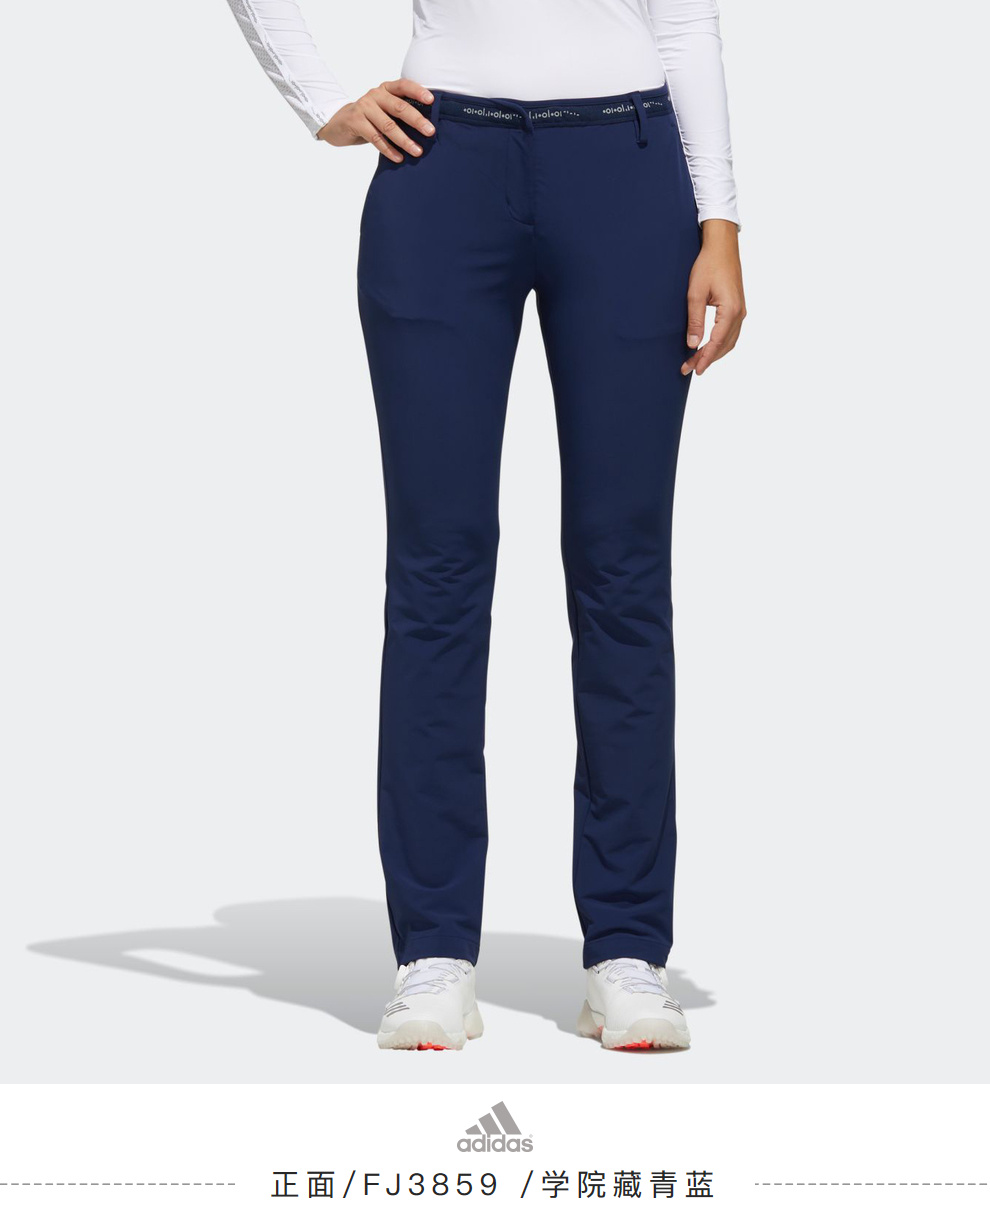 【新品】Adidas阿迪达斯高尔夫运动裤女士长裤golf户外裤子春夏款